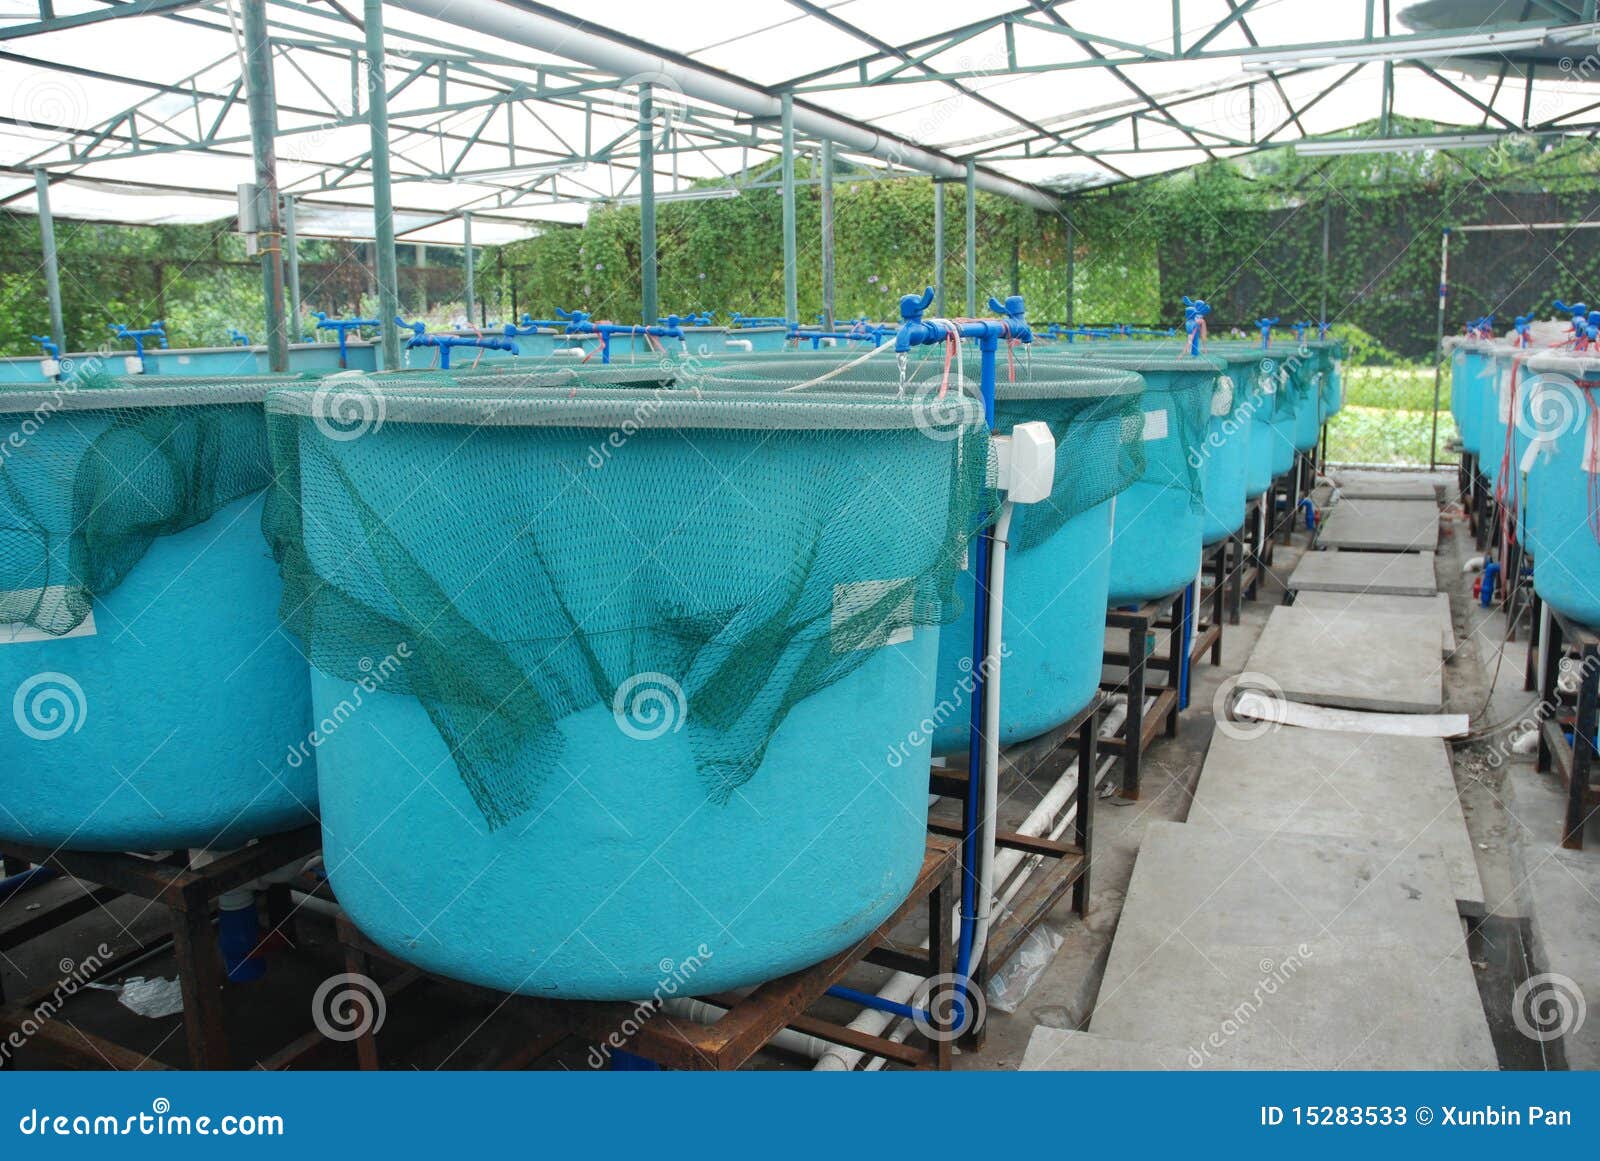 agriculture aquaculture farm